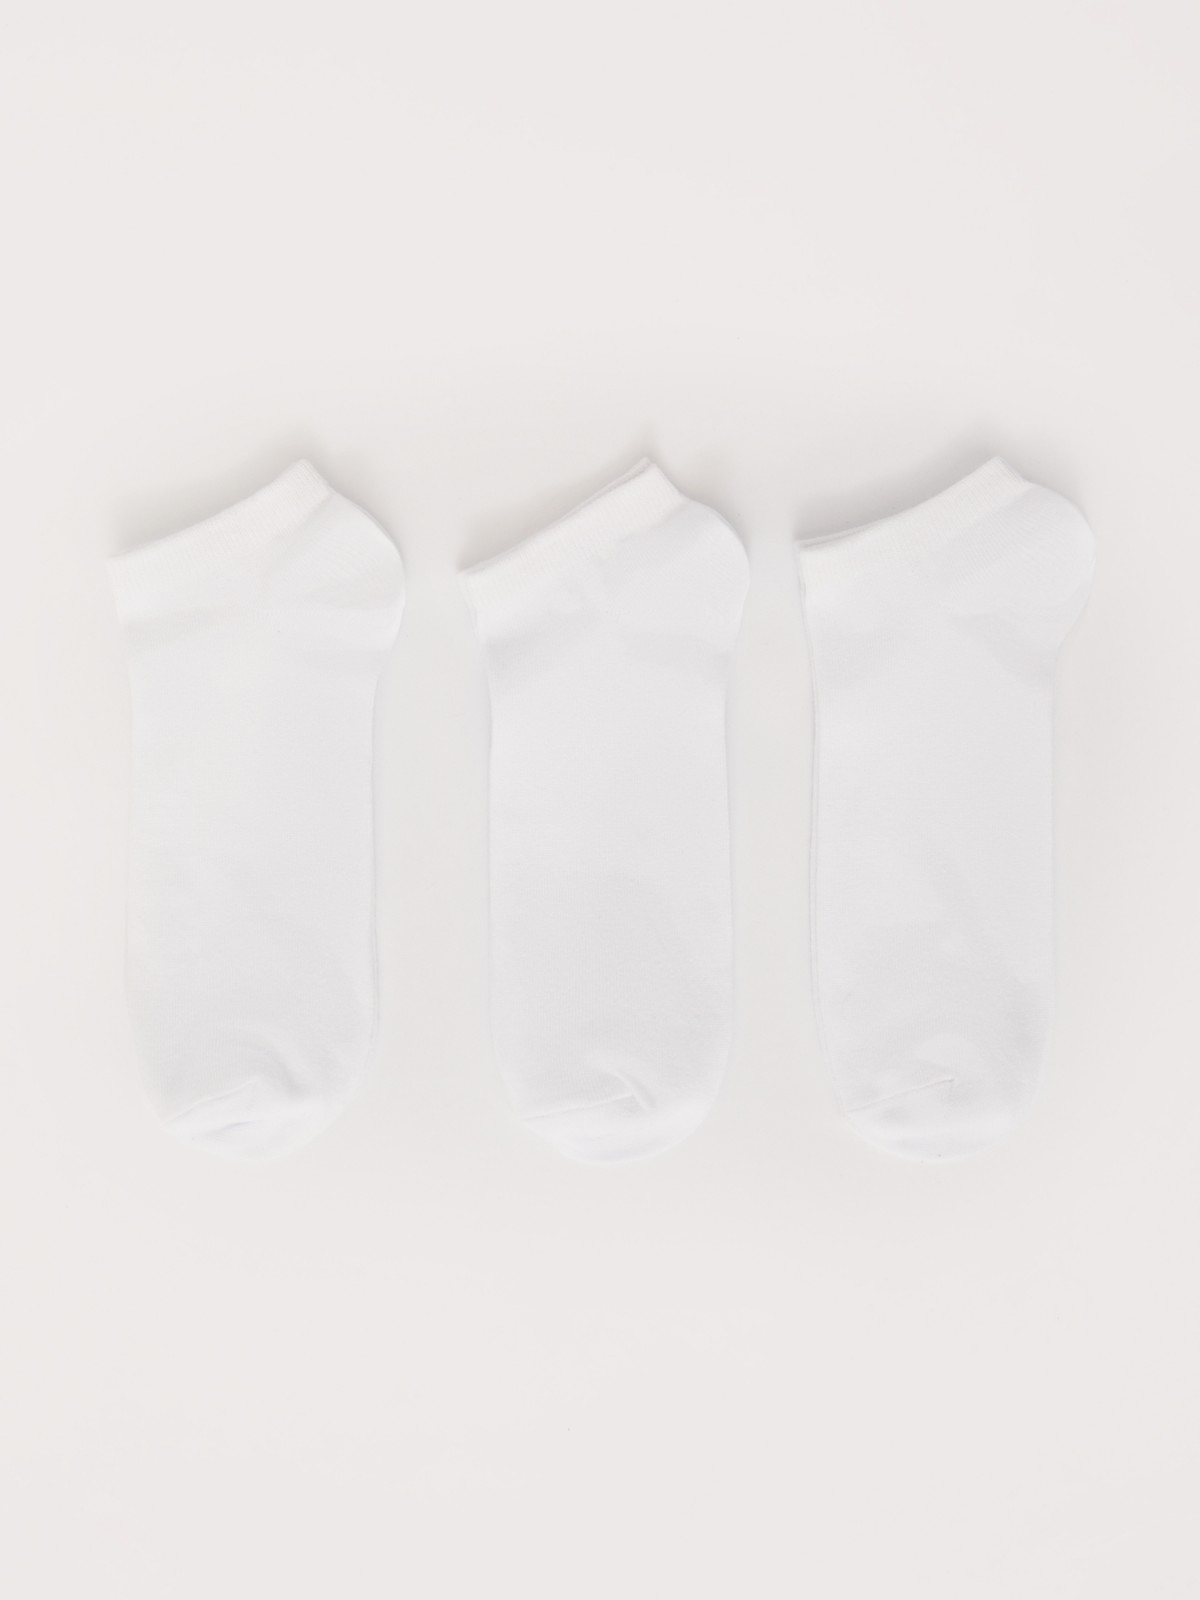 Набор коротких носков (3 пары в комплекте)